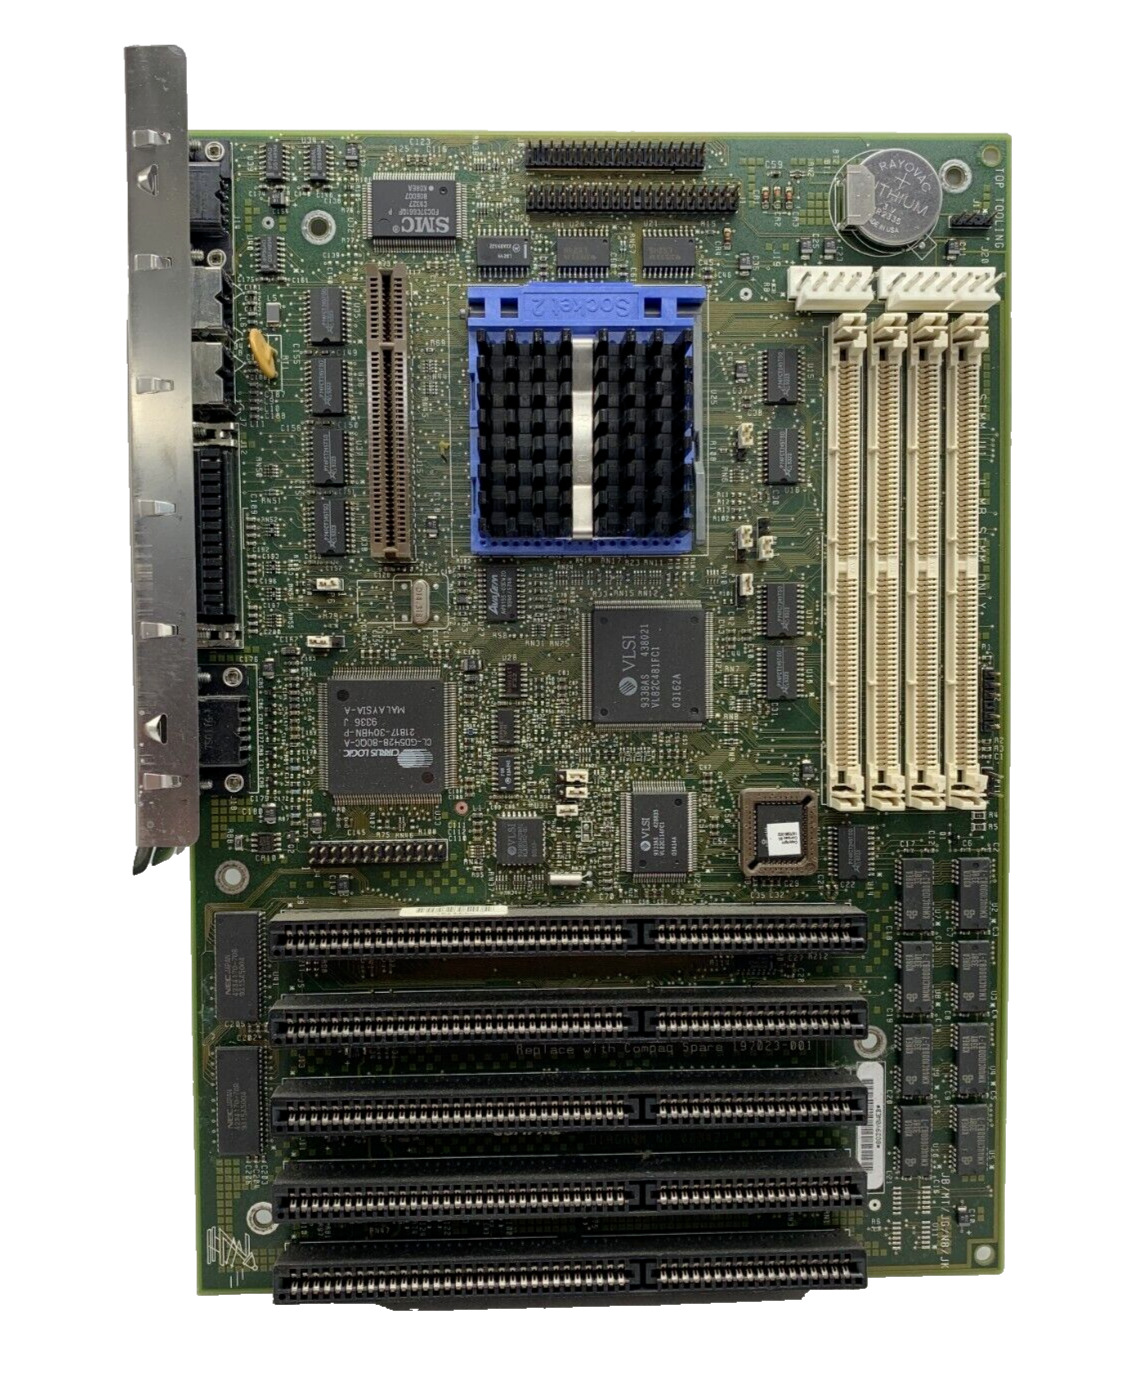 Vintage Compaq Prolinea MT Motherboard Socket 2 Intel 486-DX2 50MHz - No POST